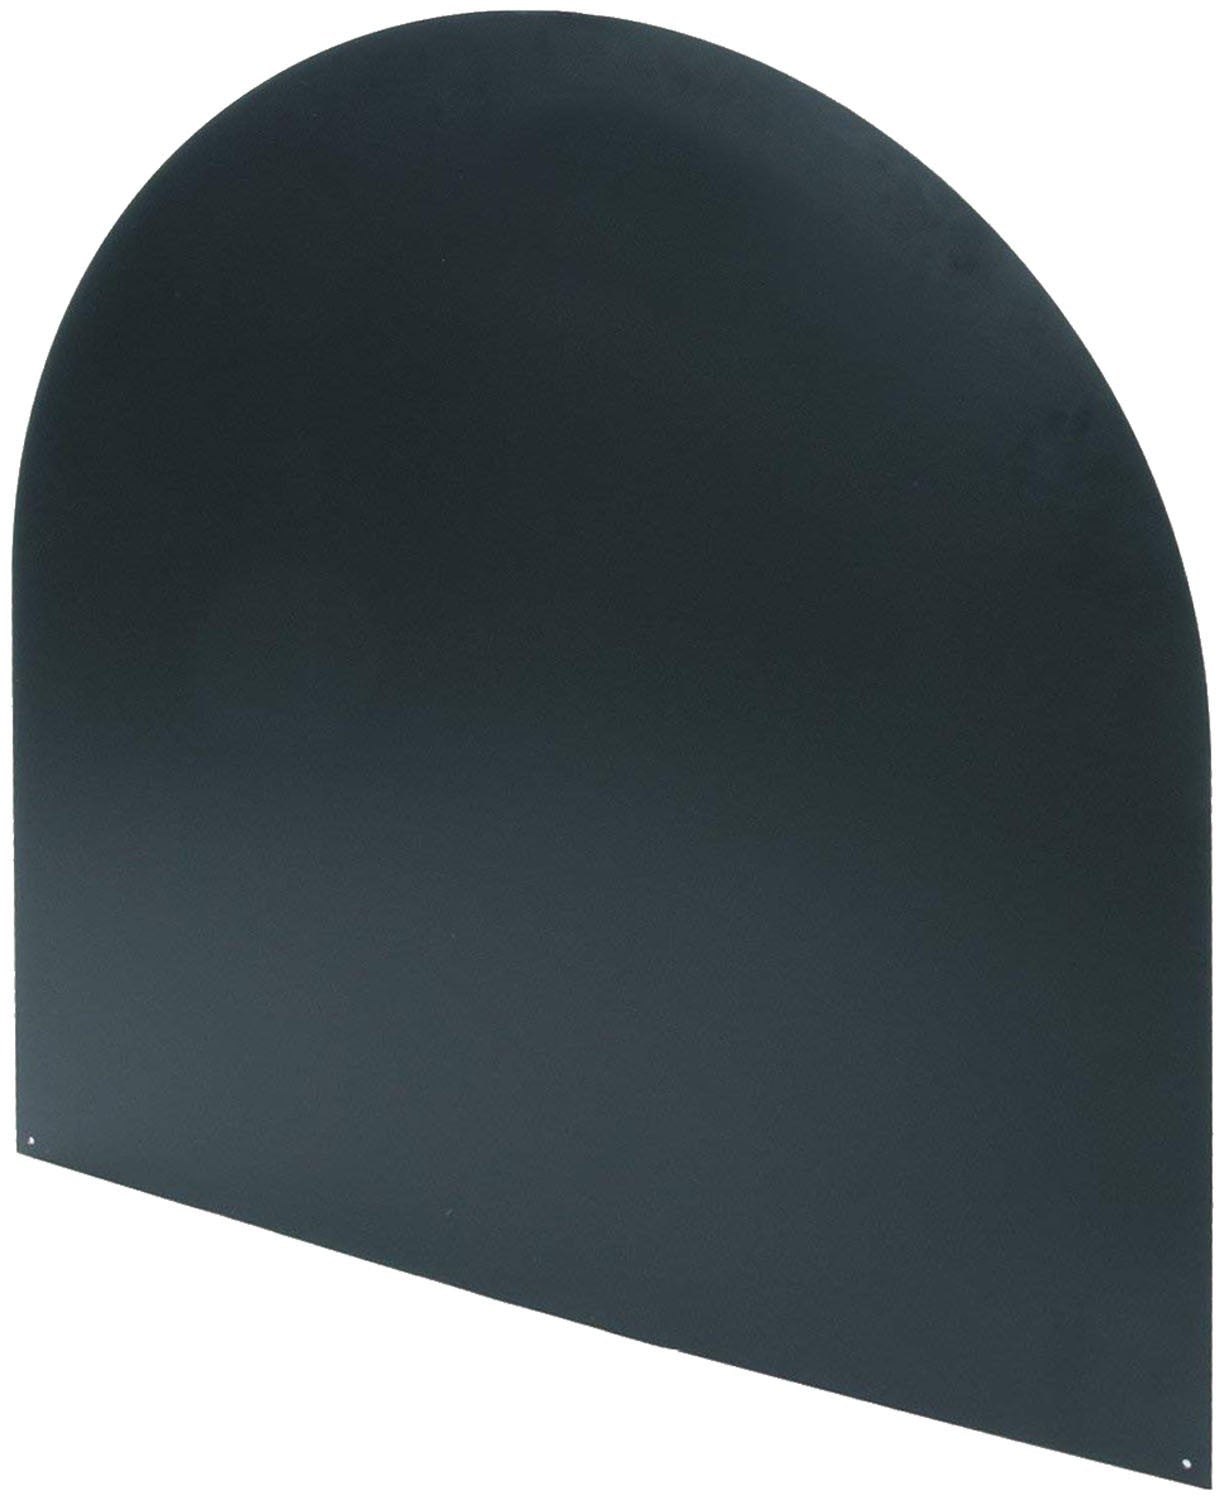 Protector de suelo para estufas (Quadra 69 x 69 cm. - 8,5 kg